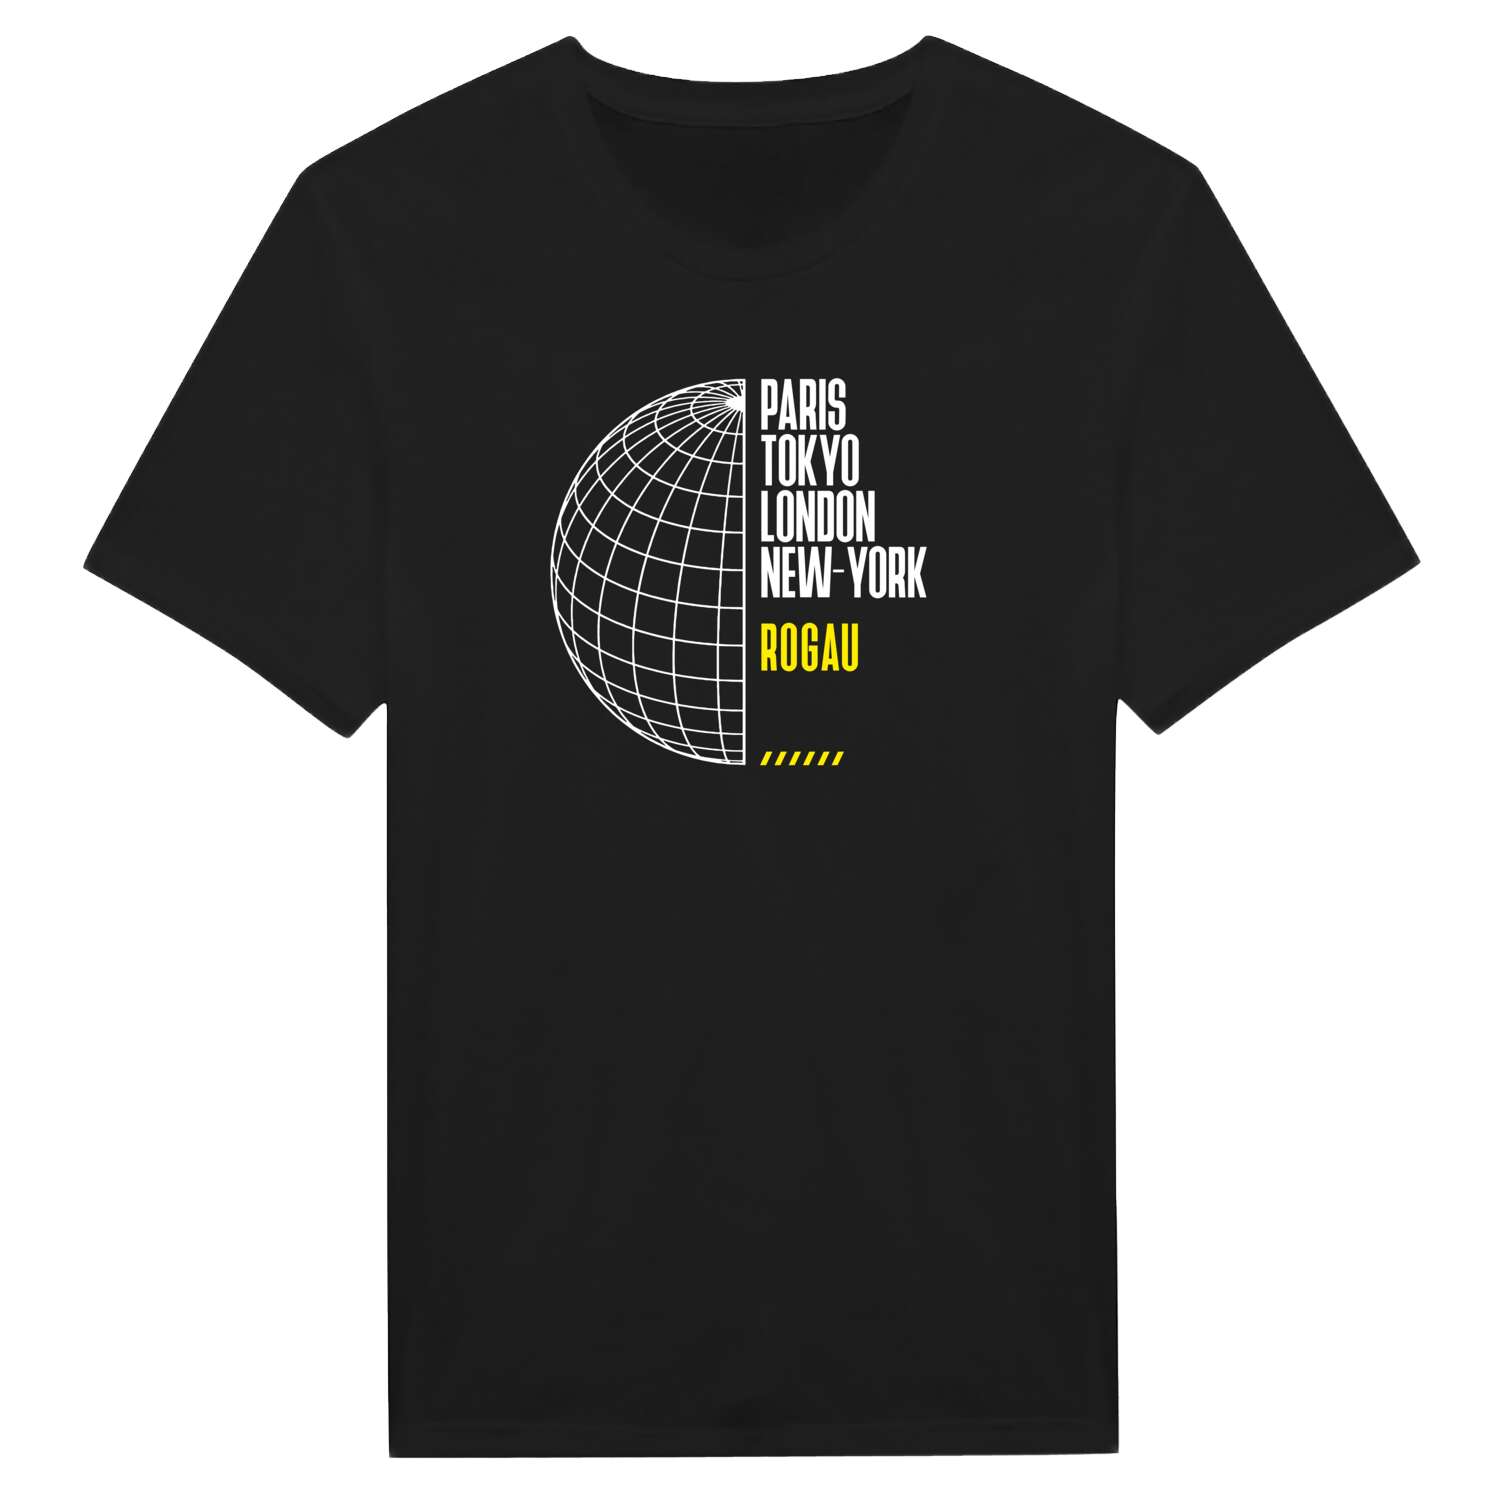 Rogau T-Shirt »Paris Tokyo London«